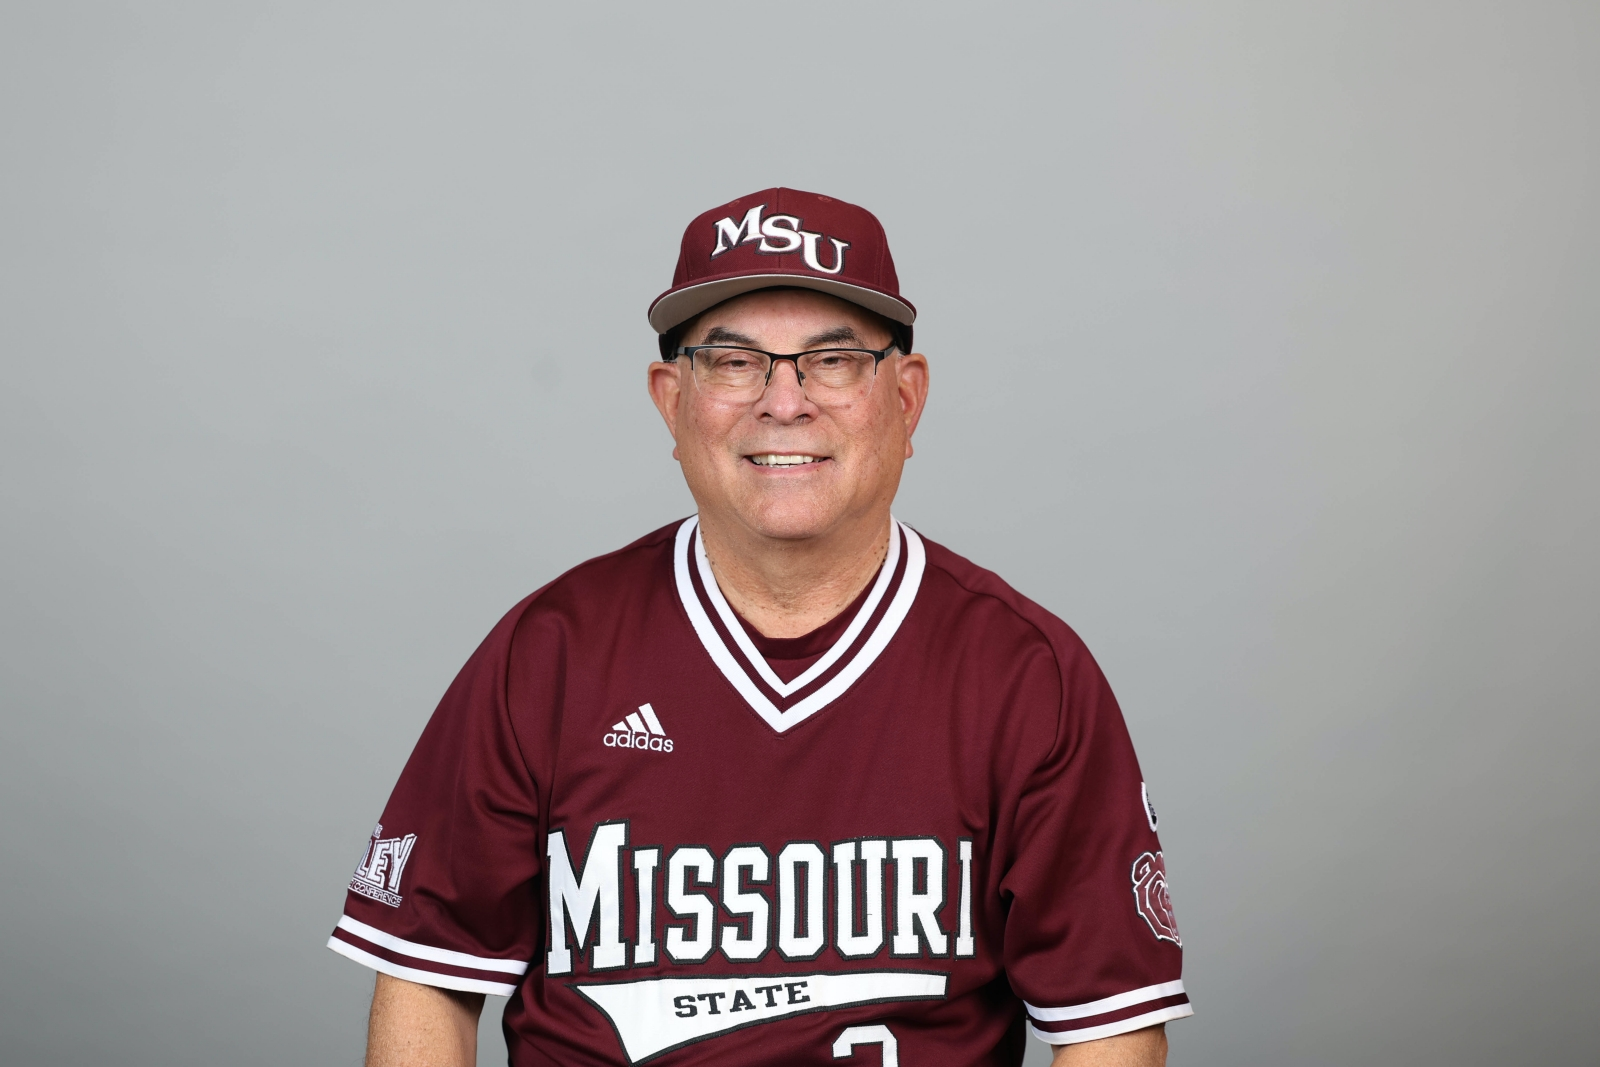 Missouri State Bears baseball coach Keith Guttin